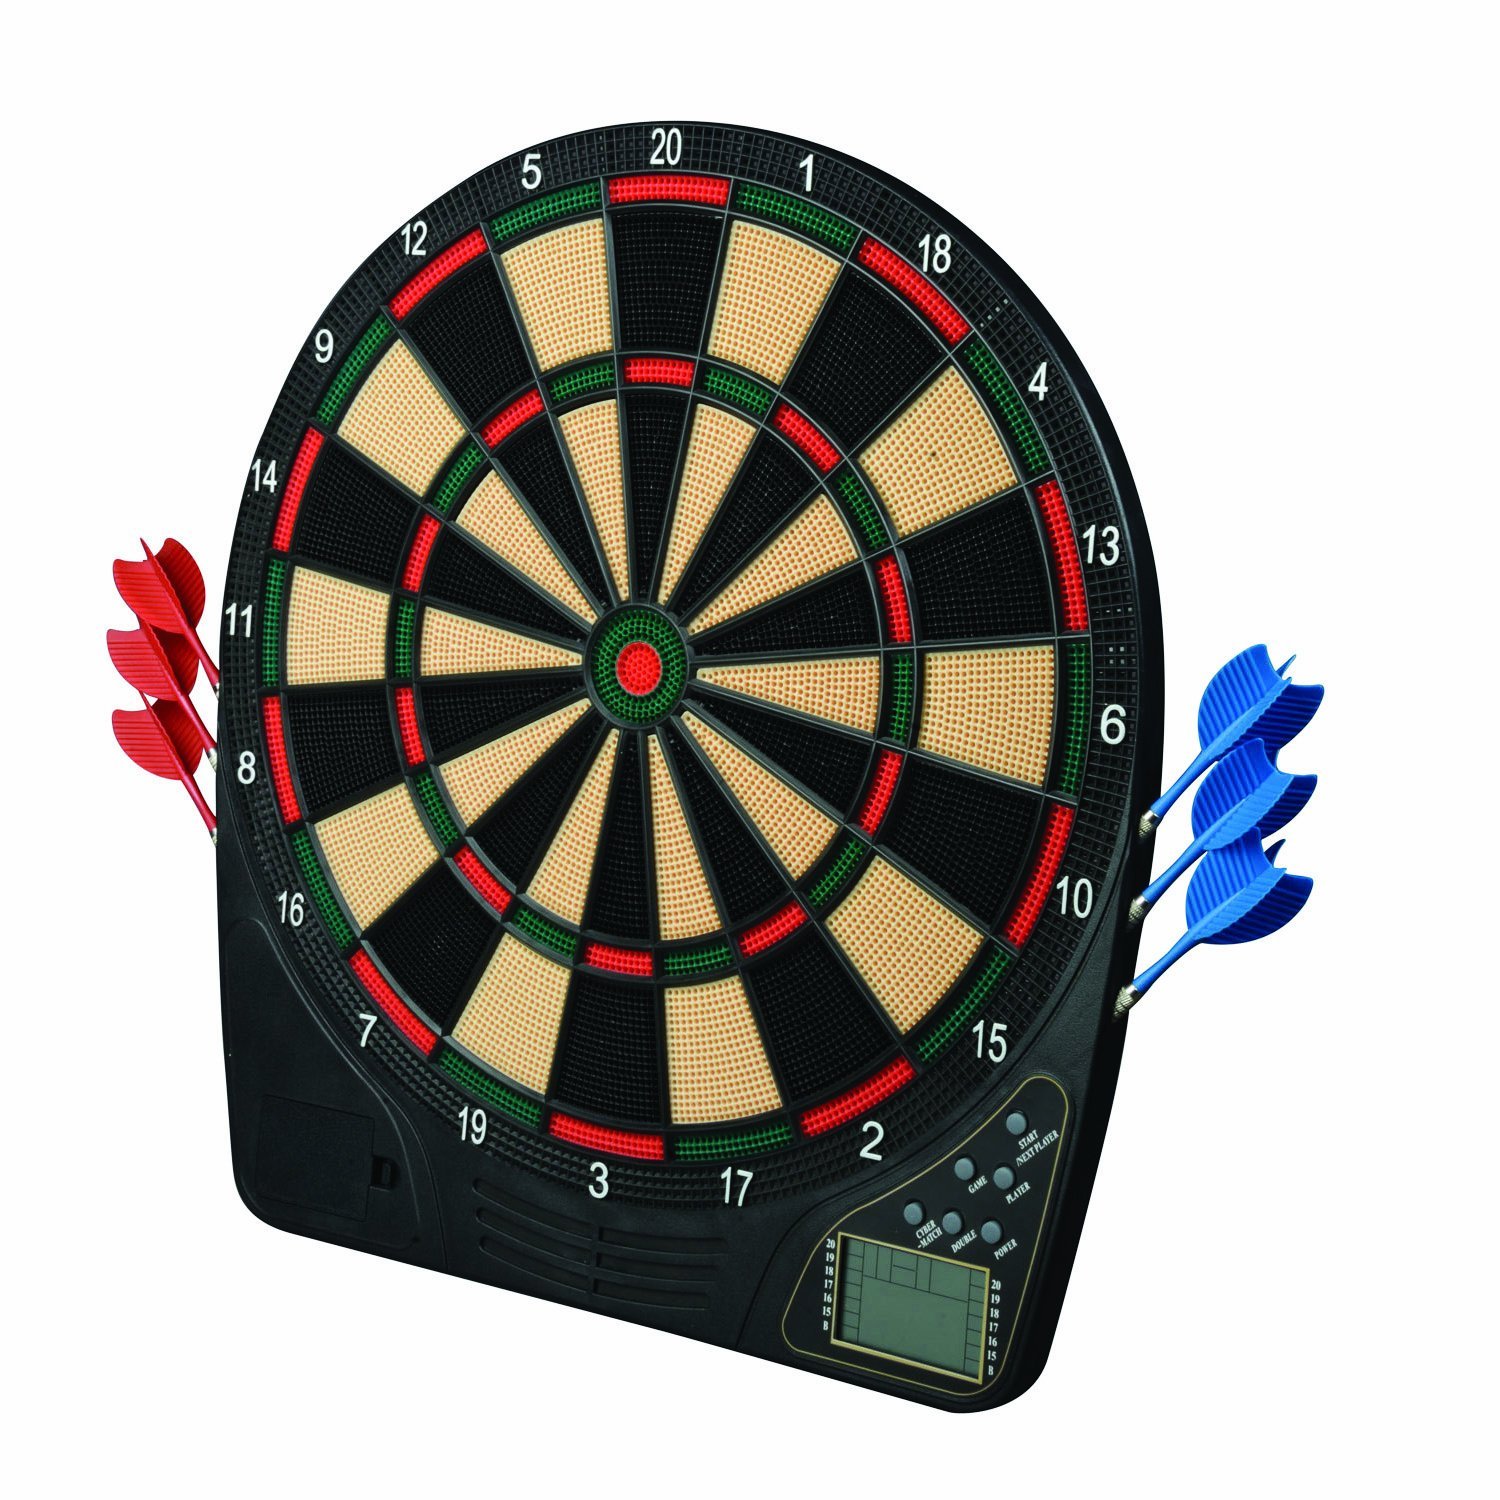 Amazon.com : Franklin Sports FS1500 Electronic Dartboard : Dart ...